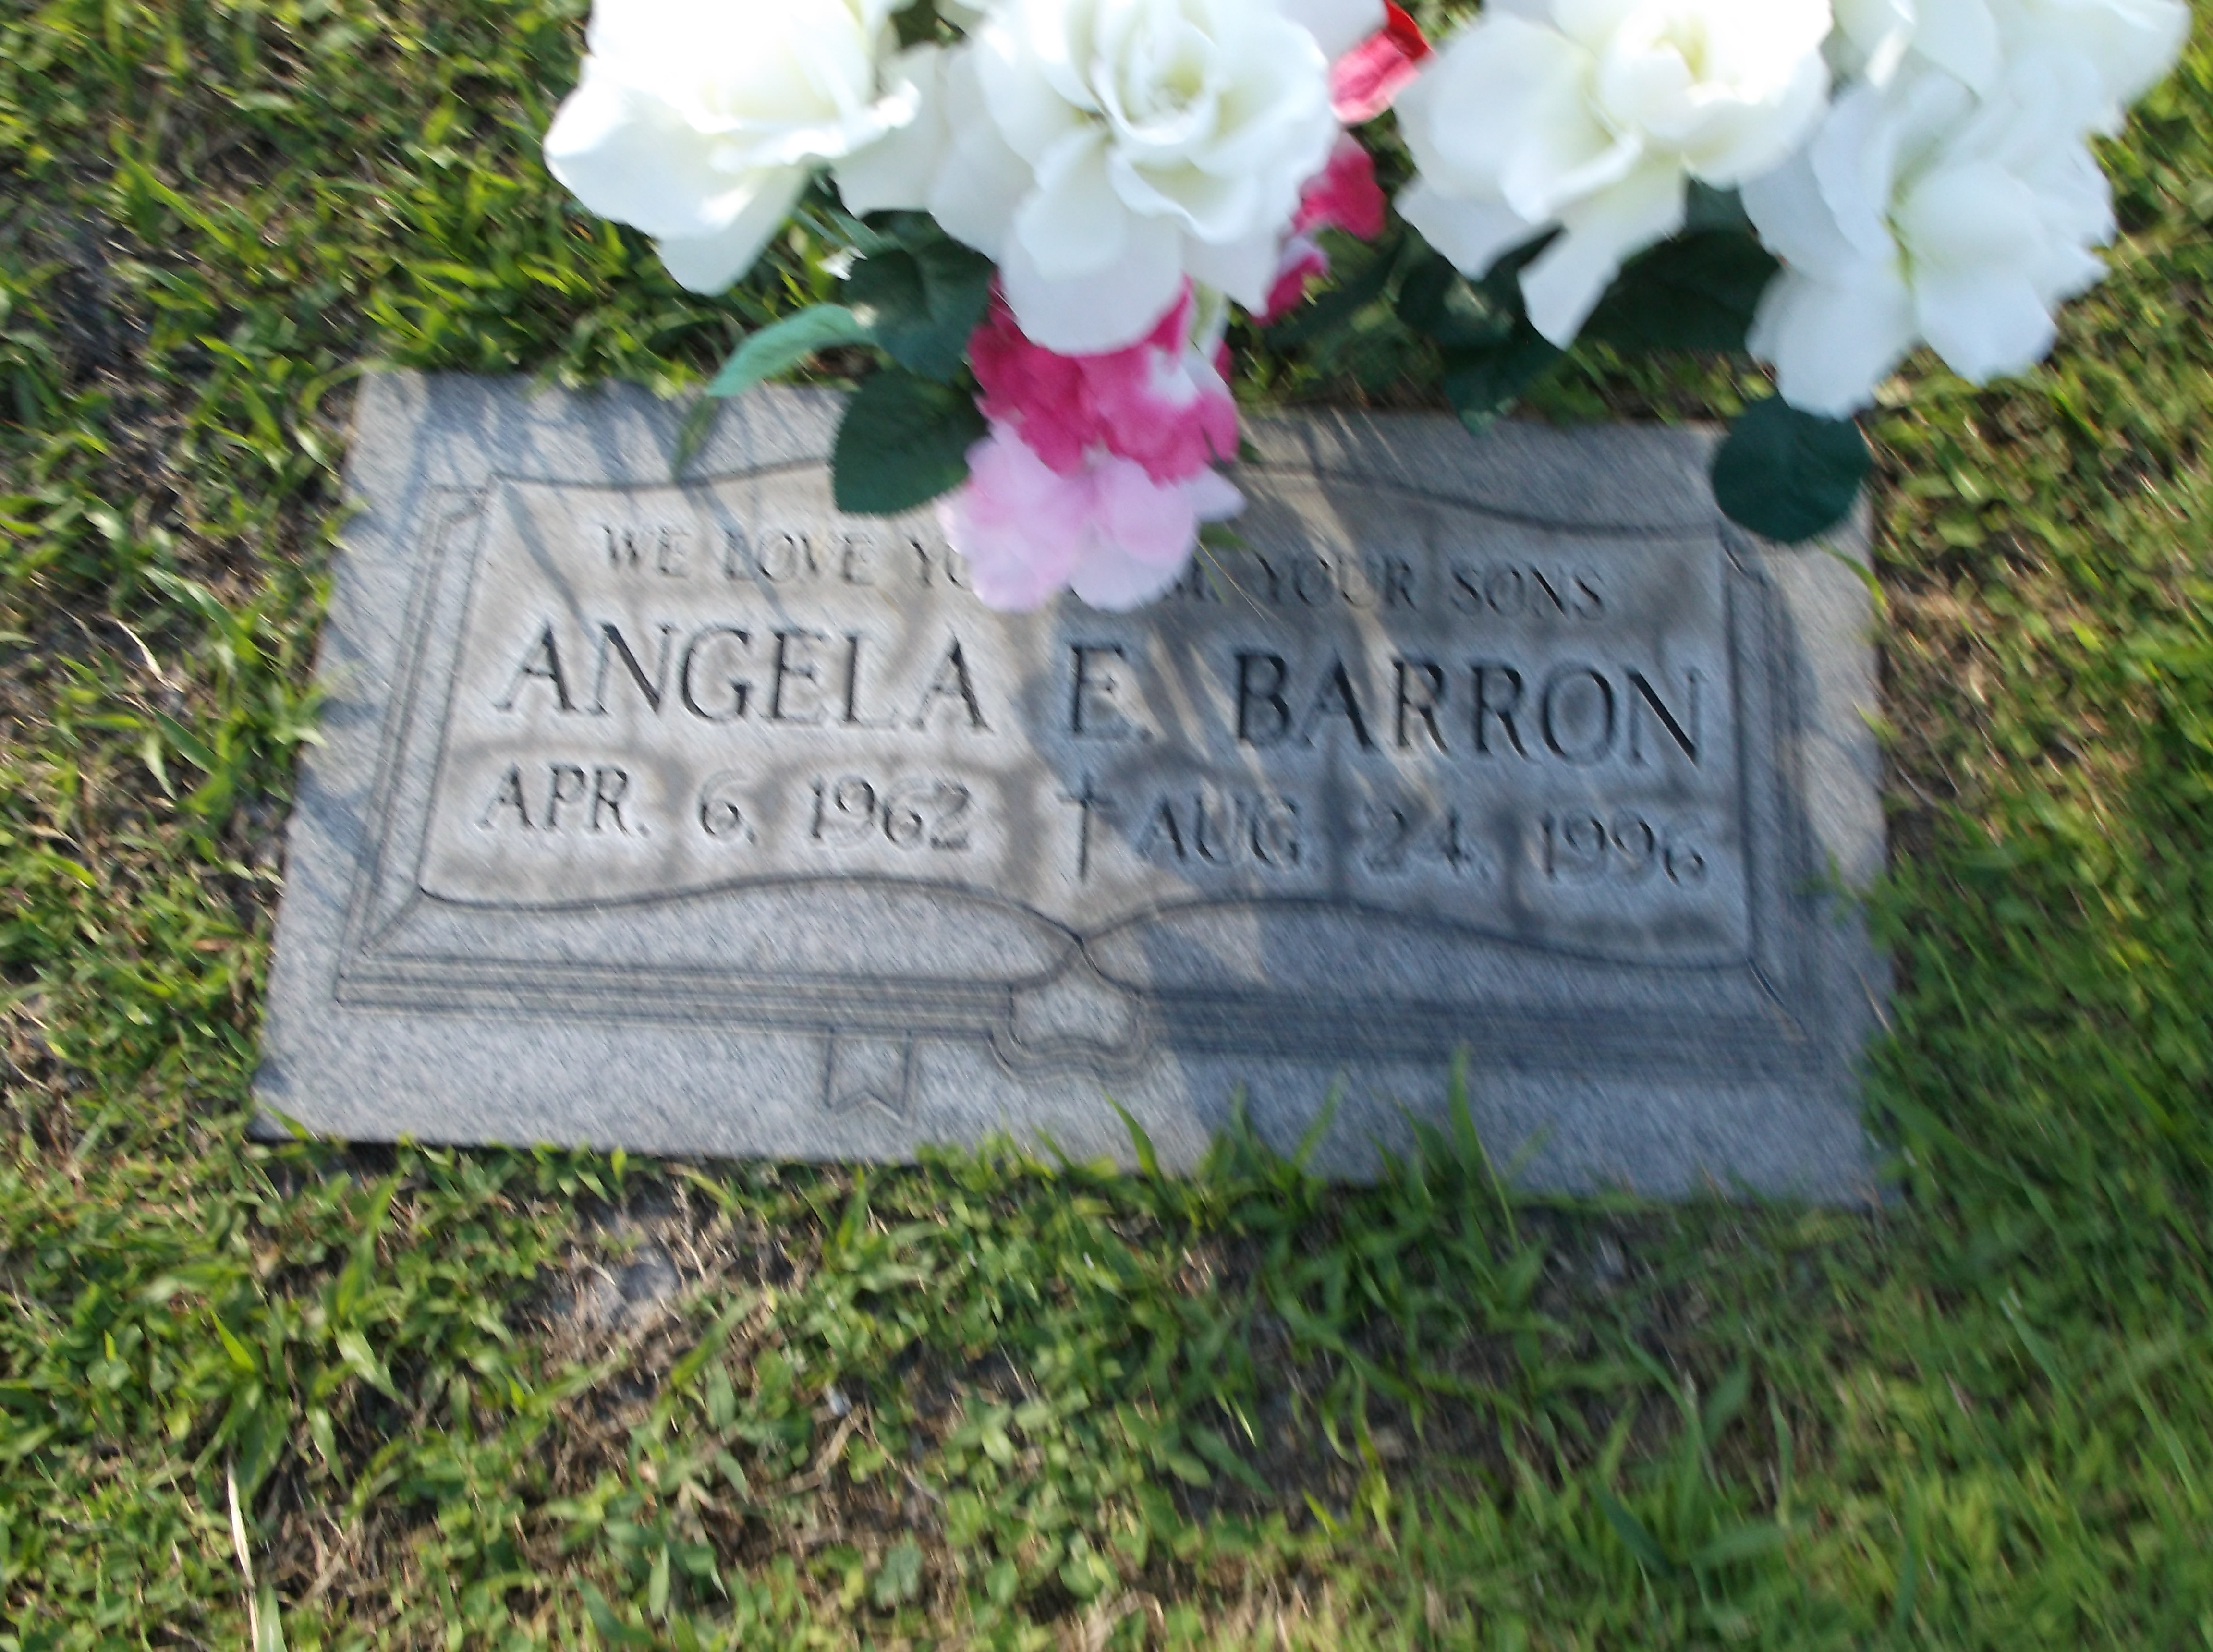 Angela E Barron